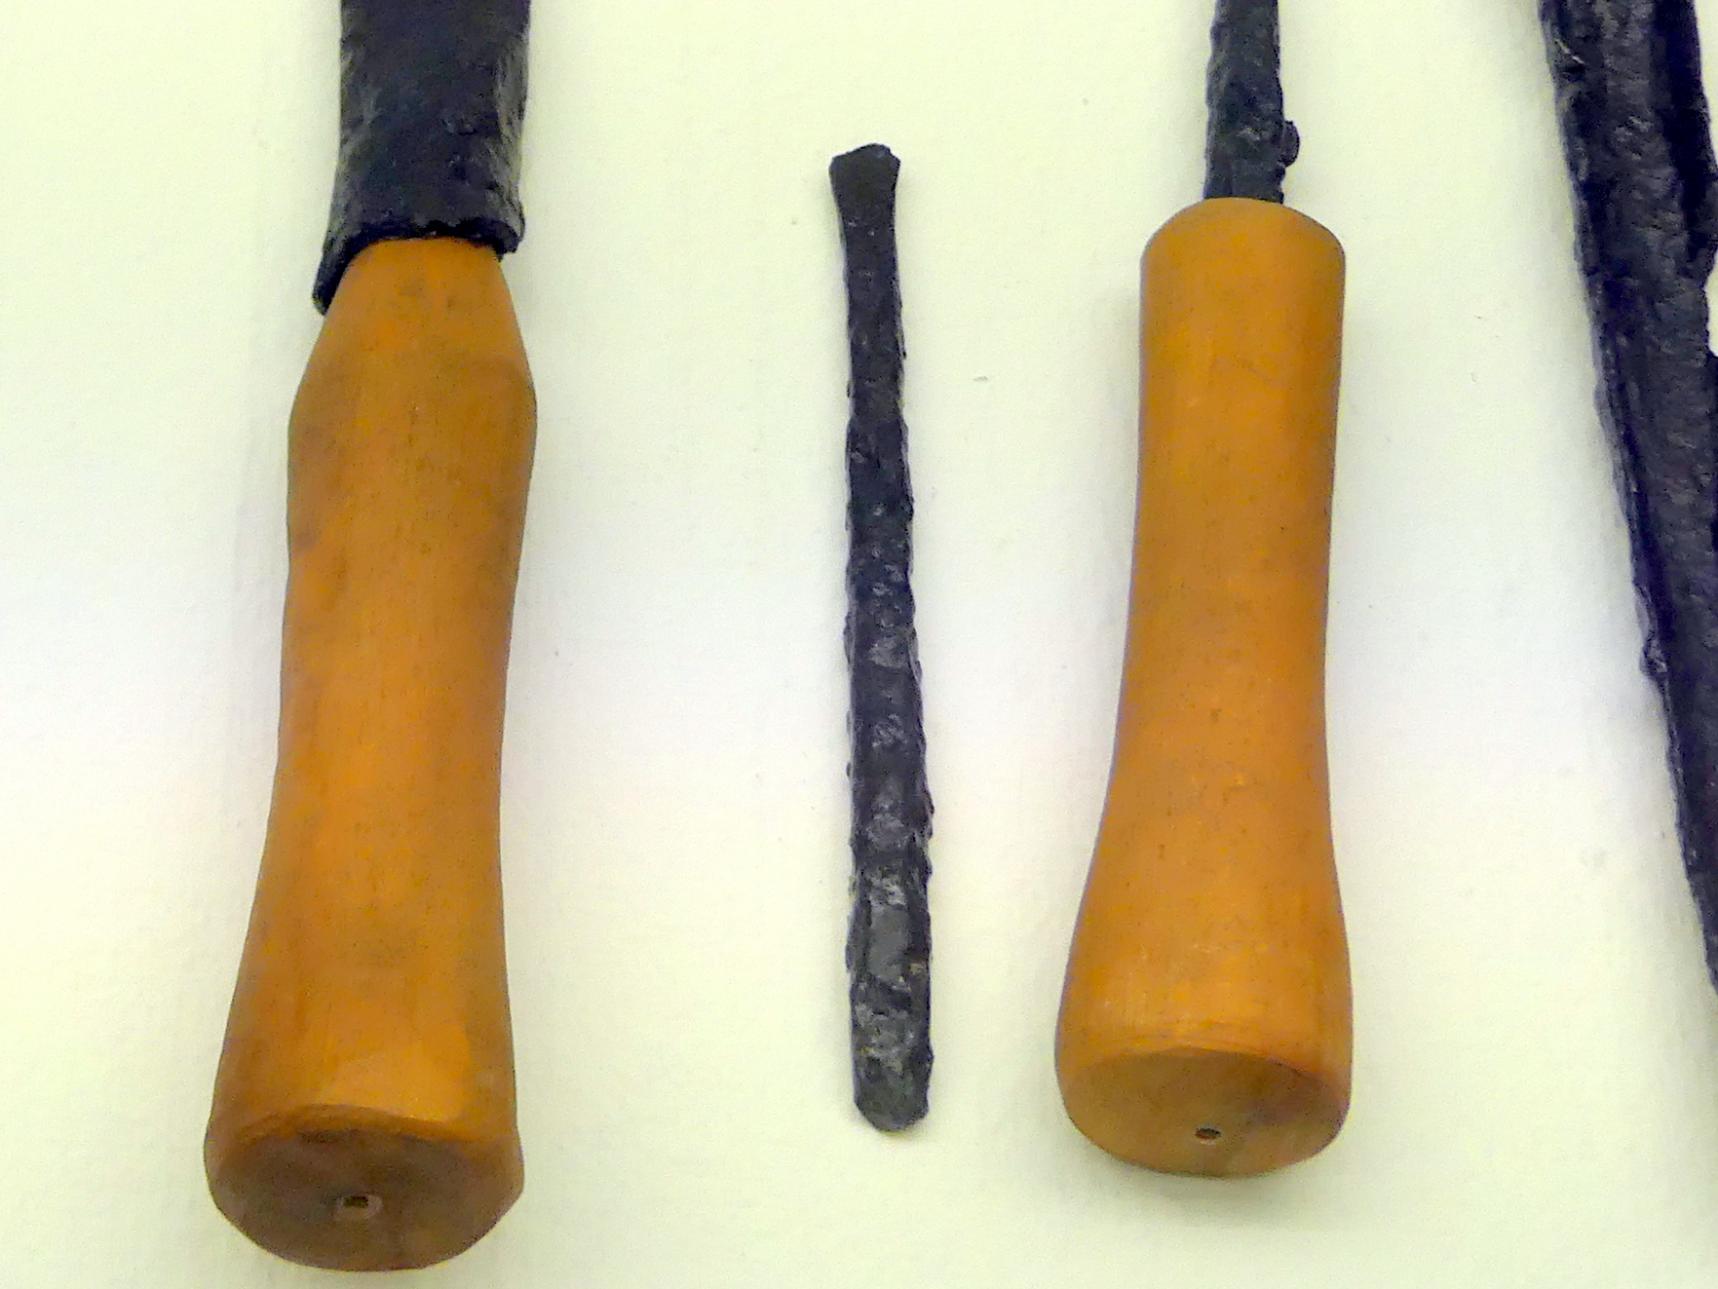 Kleiner und großer Meißel, Spätlatènezeit D, 700 - 100 v. Chr., Bild 1/3